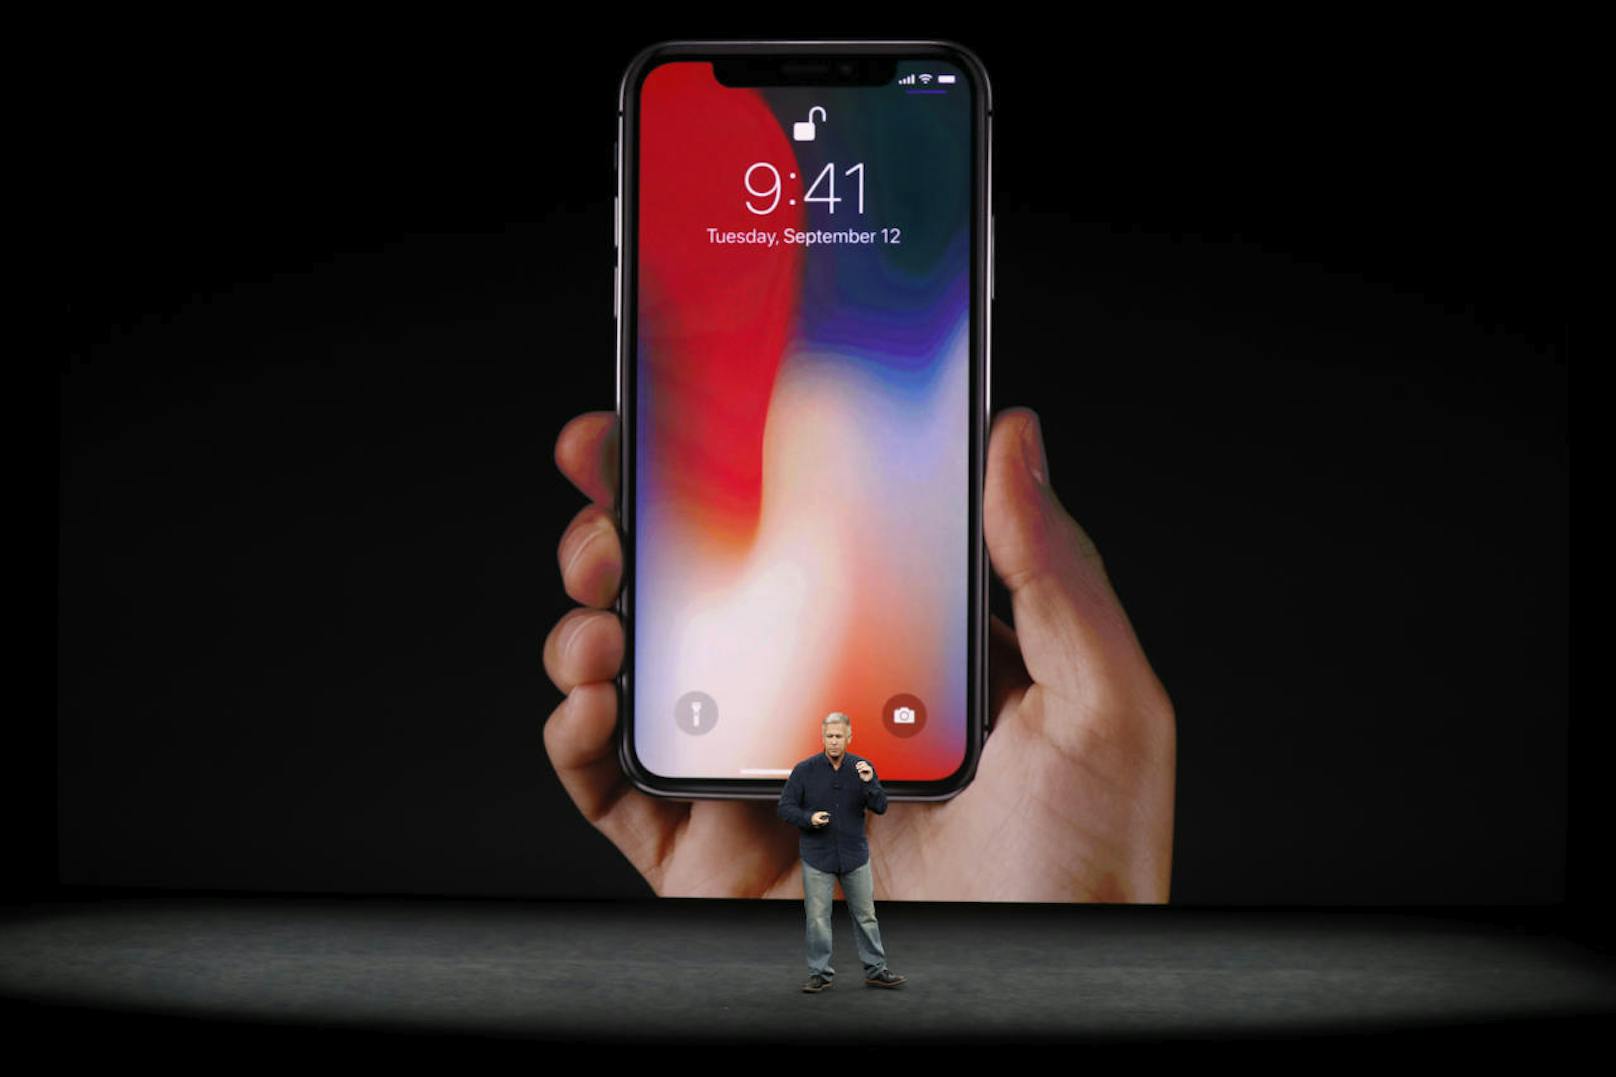 Klar, das neue iPhone X hat viel zu bieten. Es verfügt über einen 5,8-Zoll-OLED-Bildschirm, den Apple Super Retina nennt.